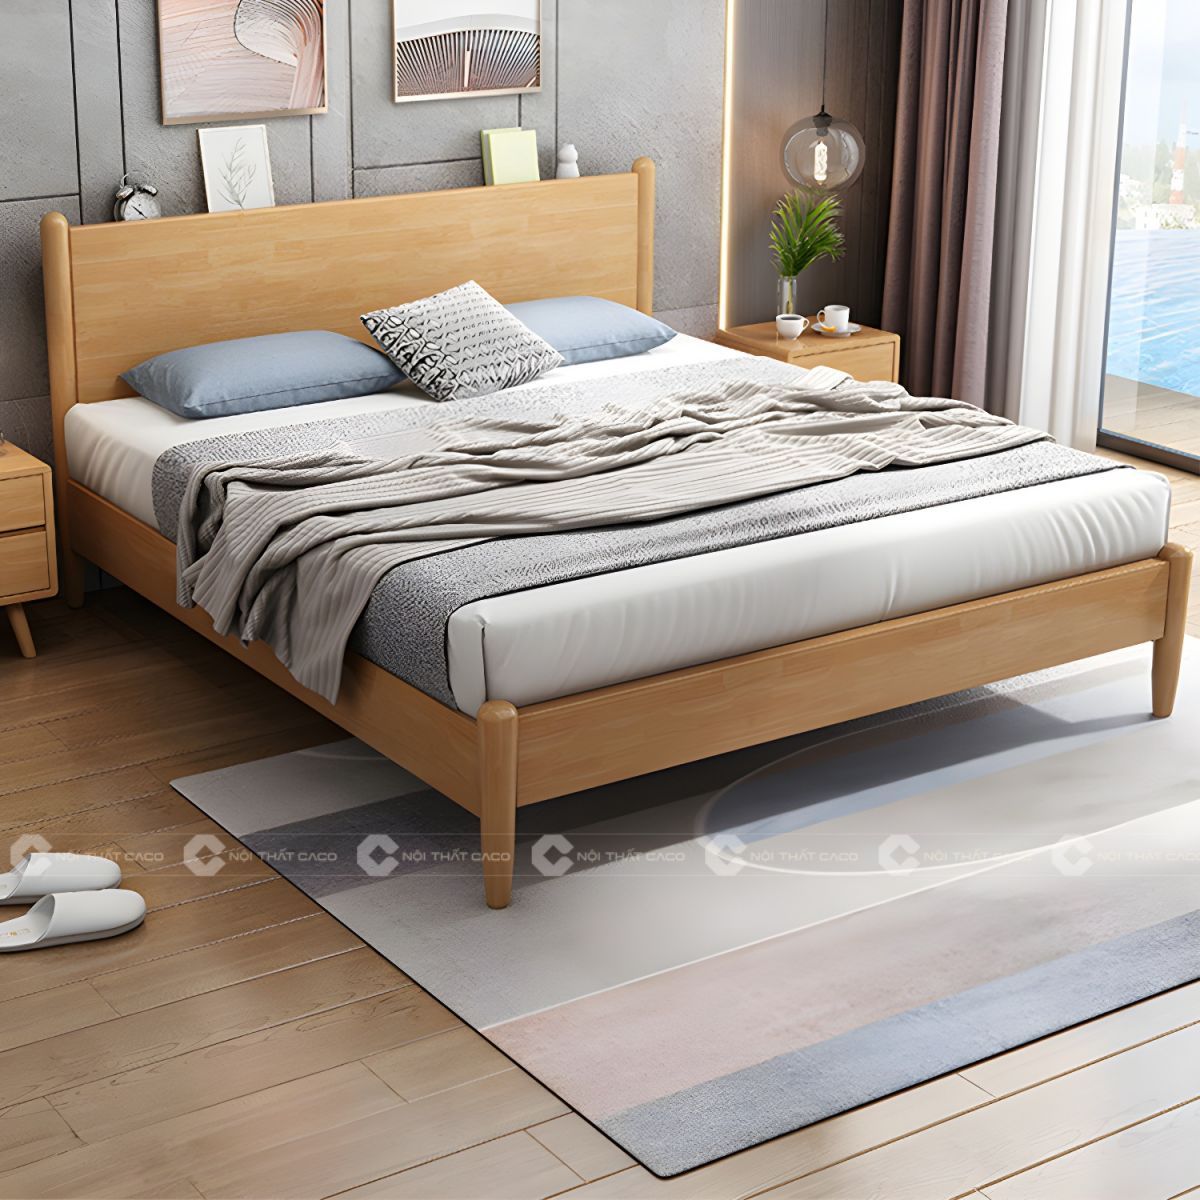 Giường ngủ gỗ tự nhiên sang trọng, tinh tế